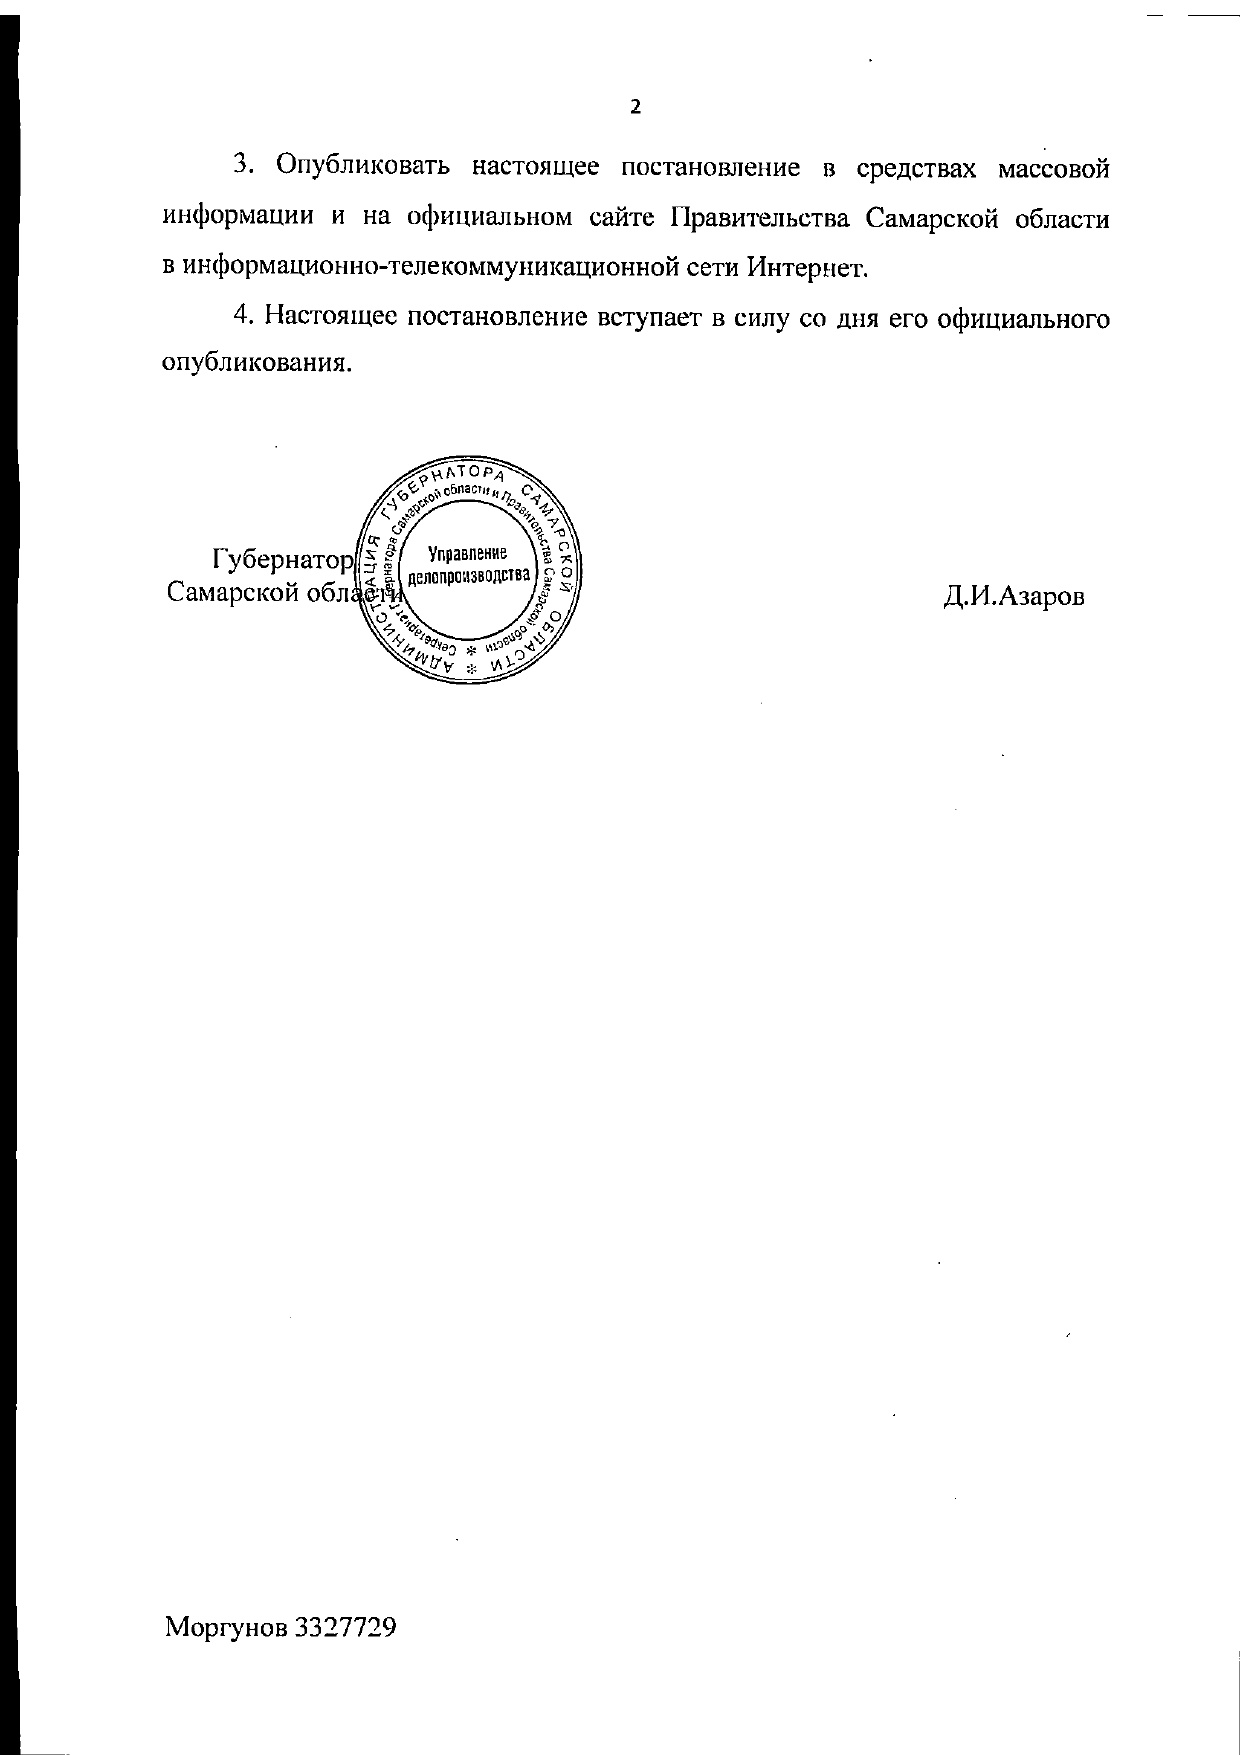 Распоряжение губернатора самарской области. Подпись губернатора Самарской области.